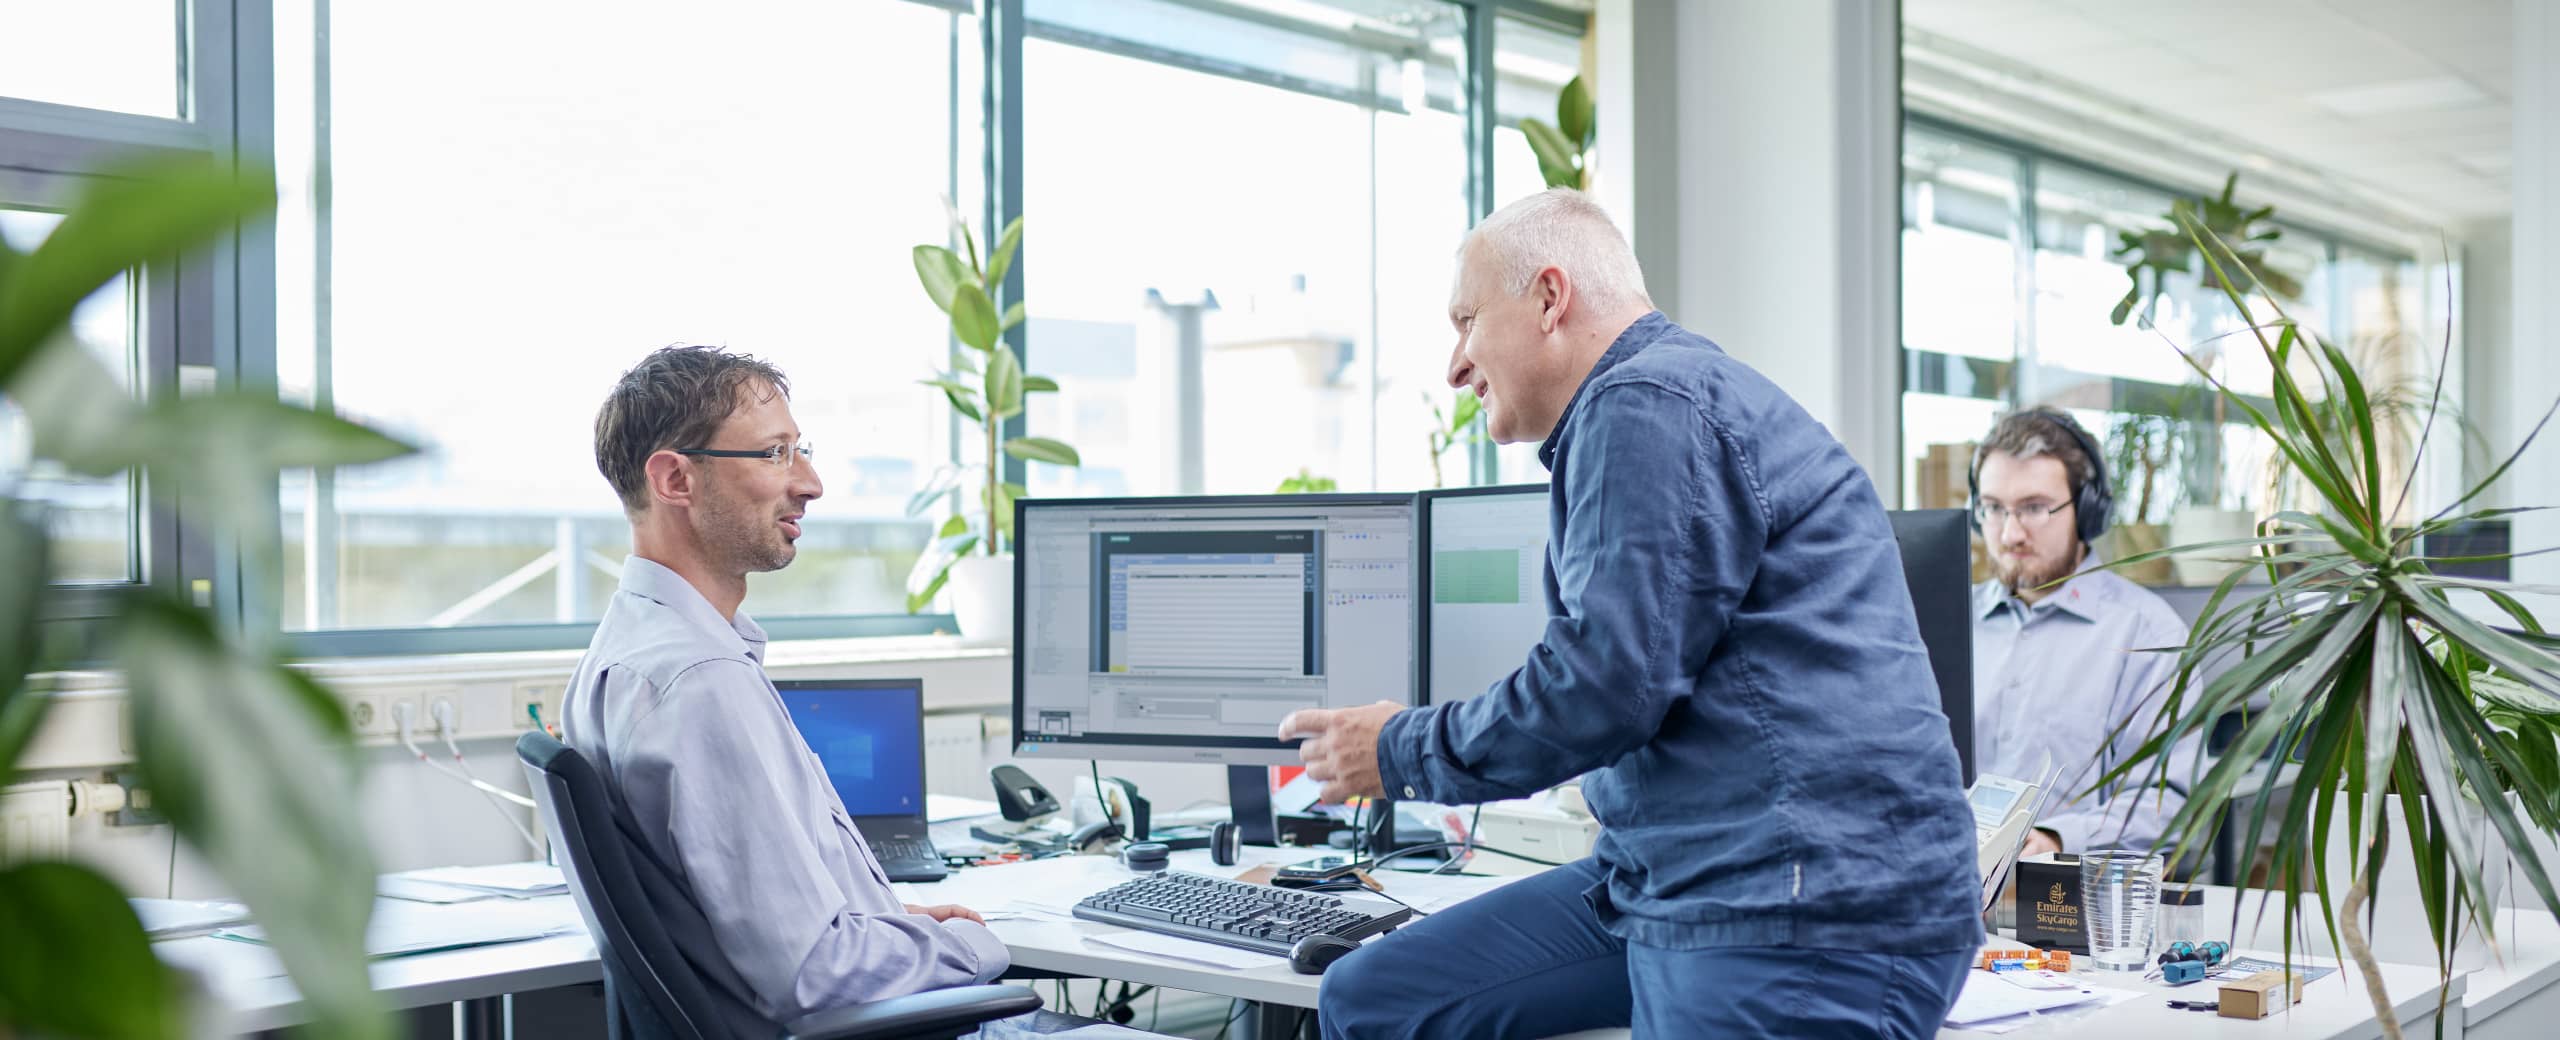 Zwei Mitarbeiter an einem Computerarbeitsplatz diskutieren das kommende Projekt.